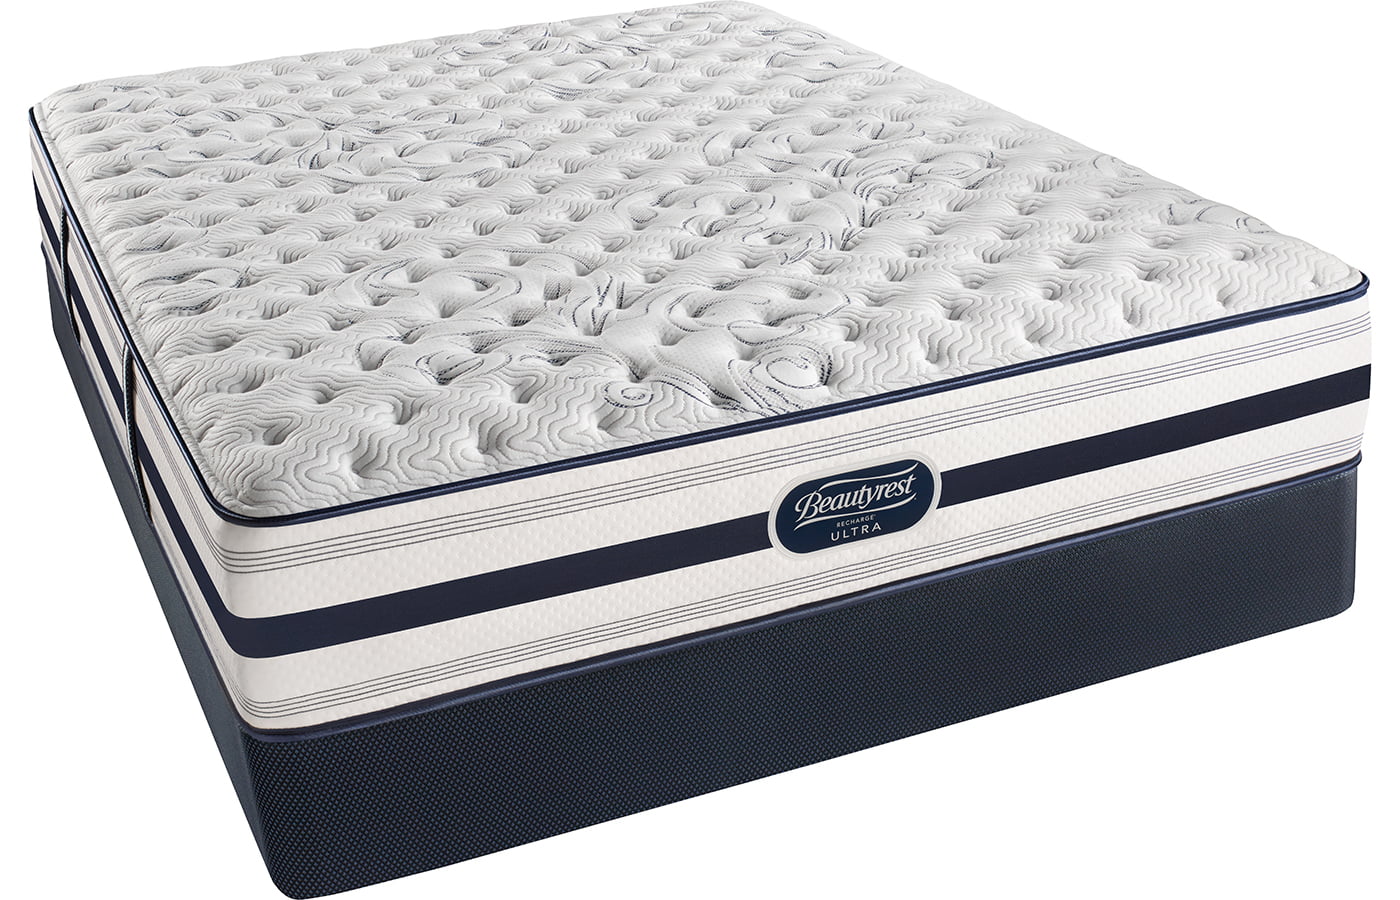 simmons deep sleep mattress reviews